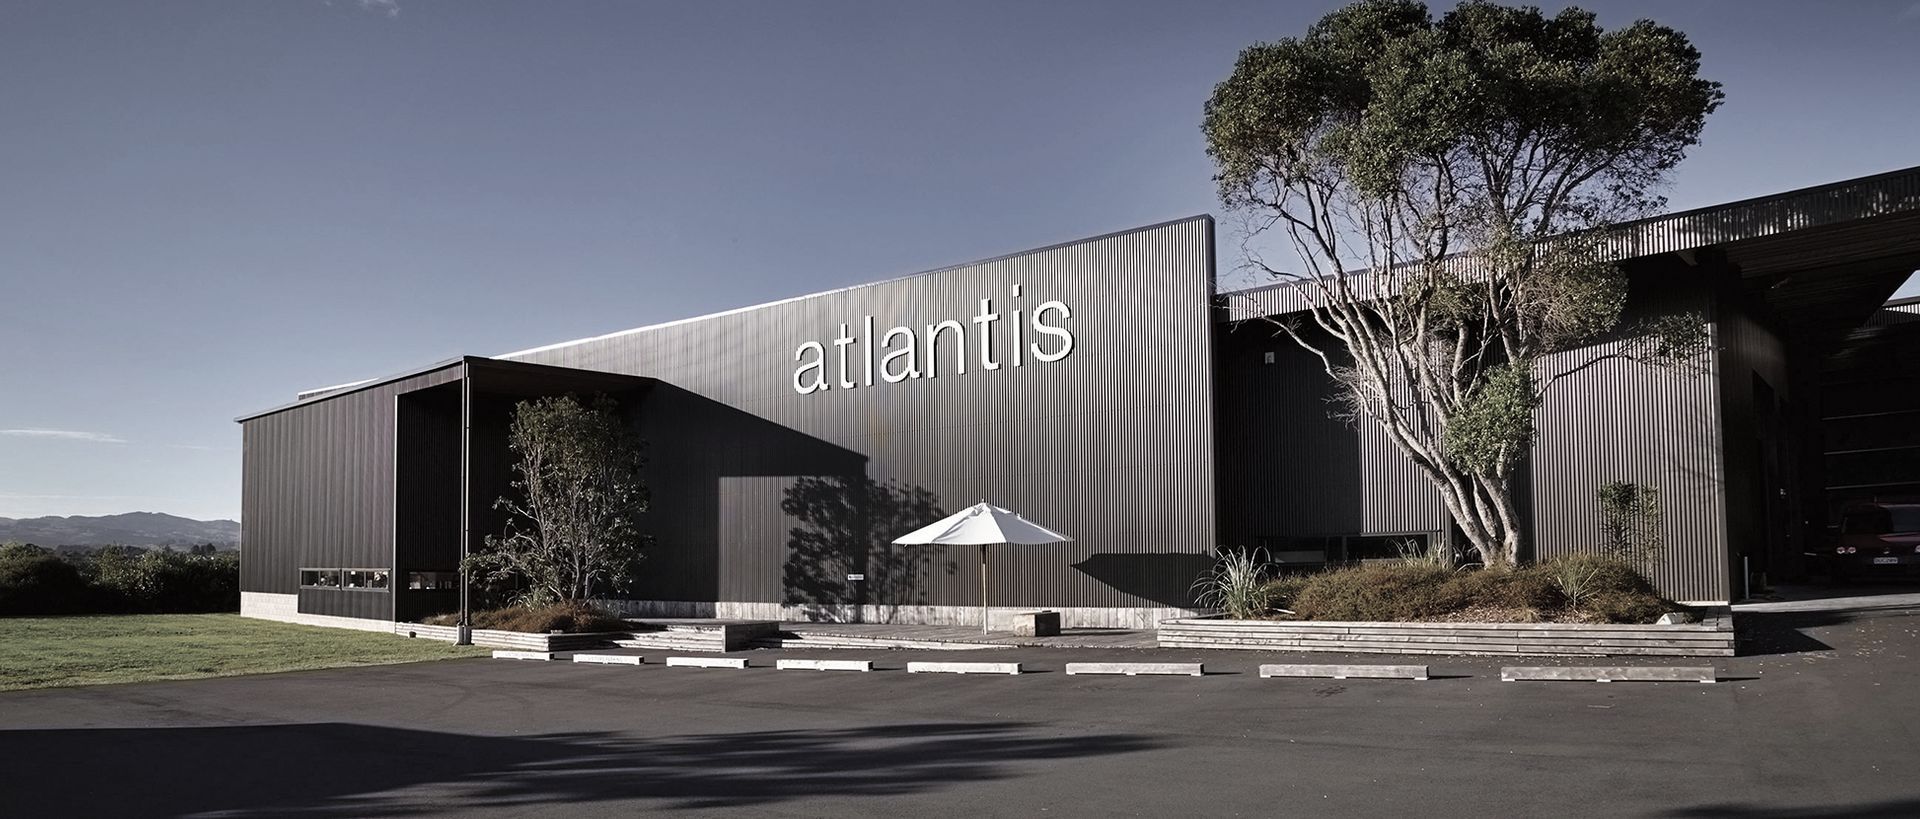 Atlantis Banner image